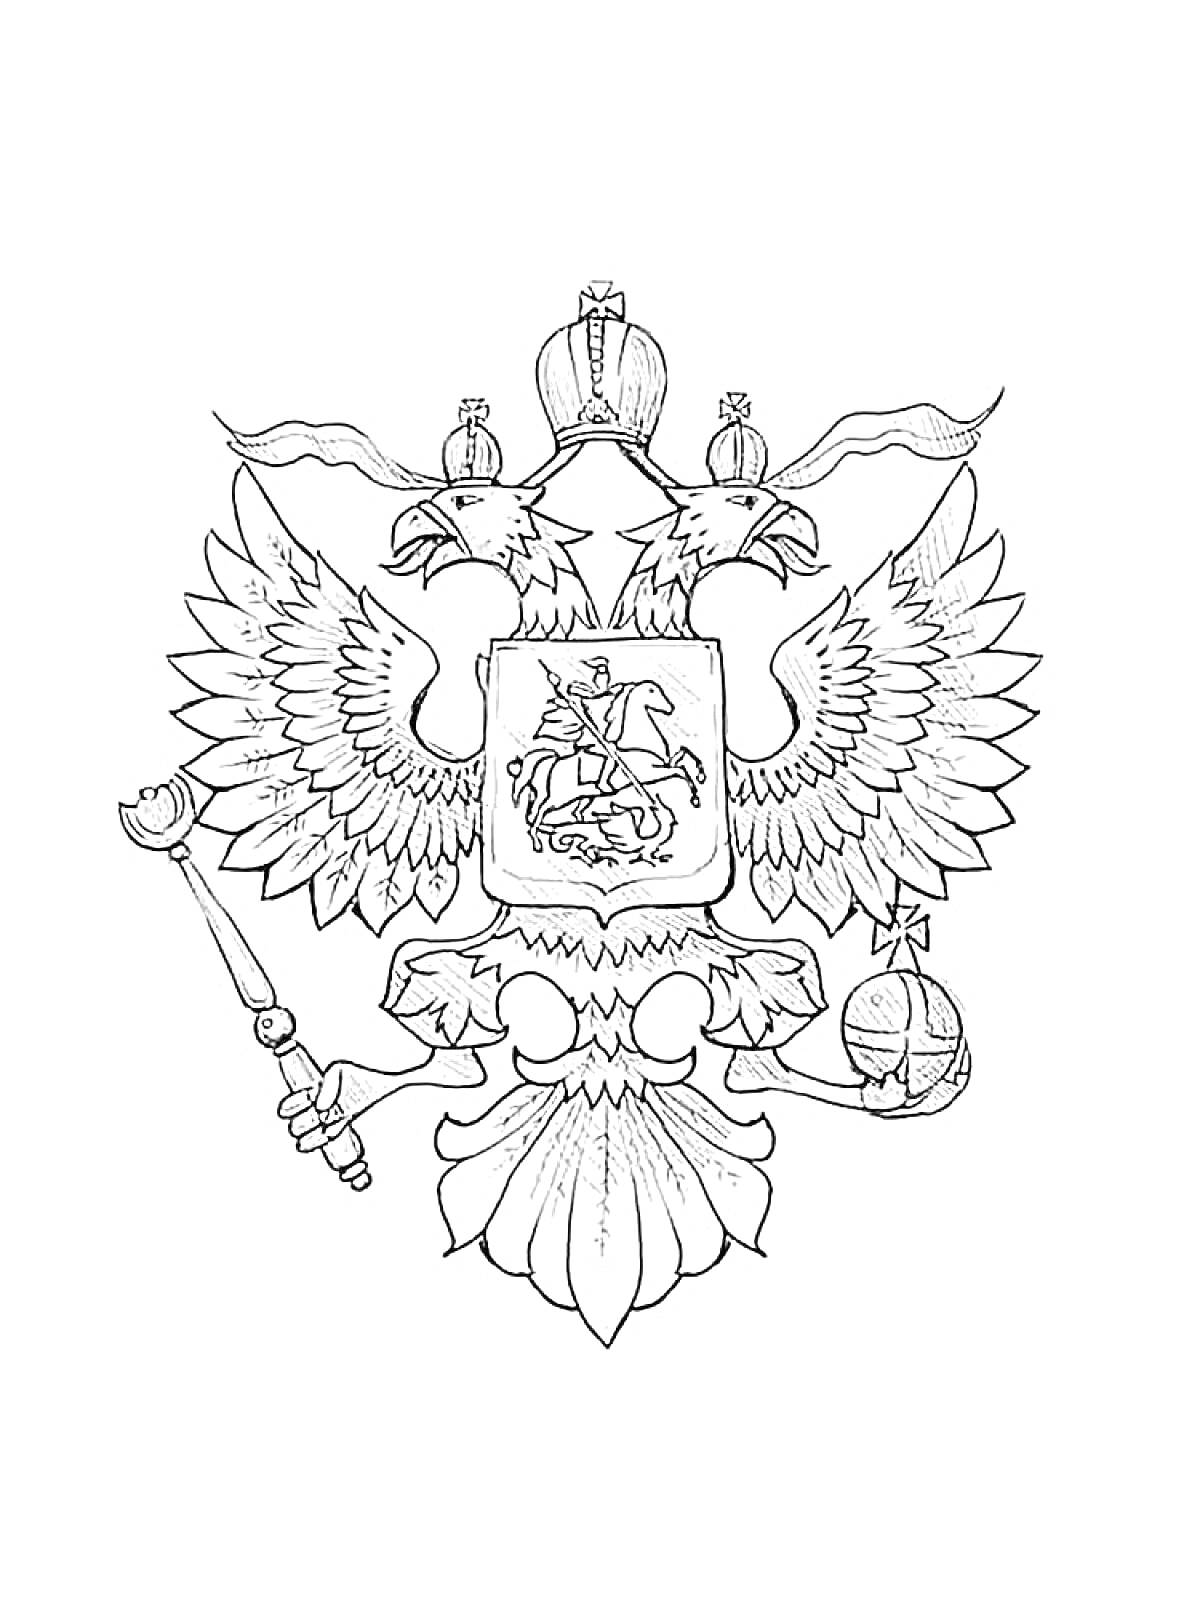 Герб с двухглавым орлом, державой и скипетром